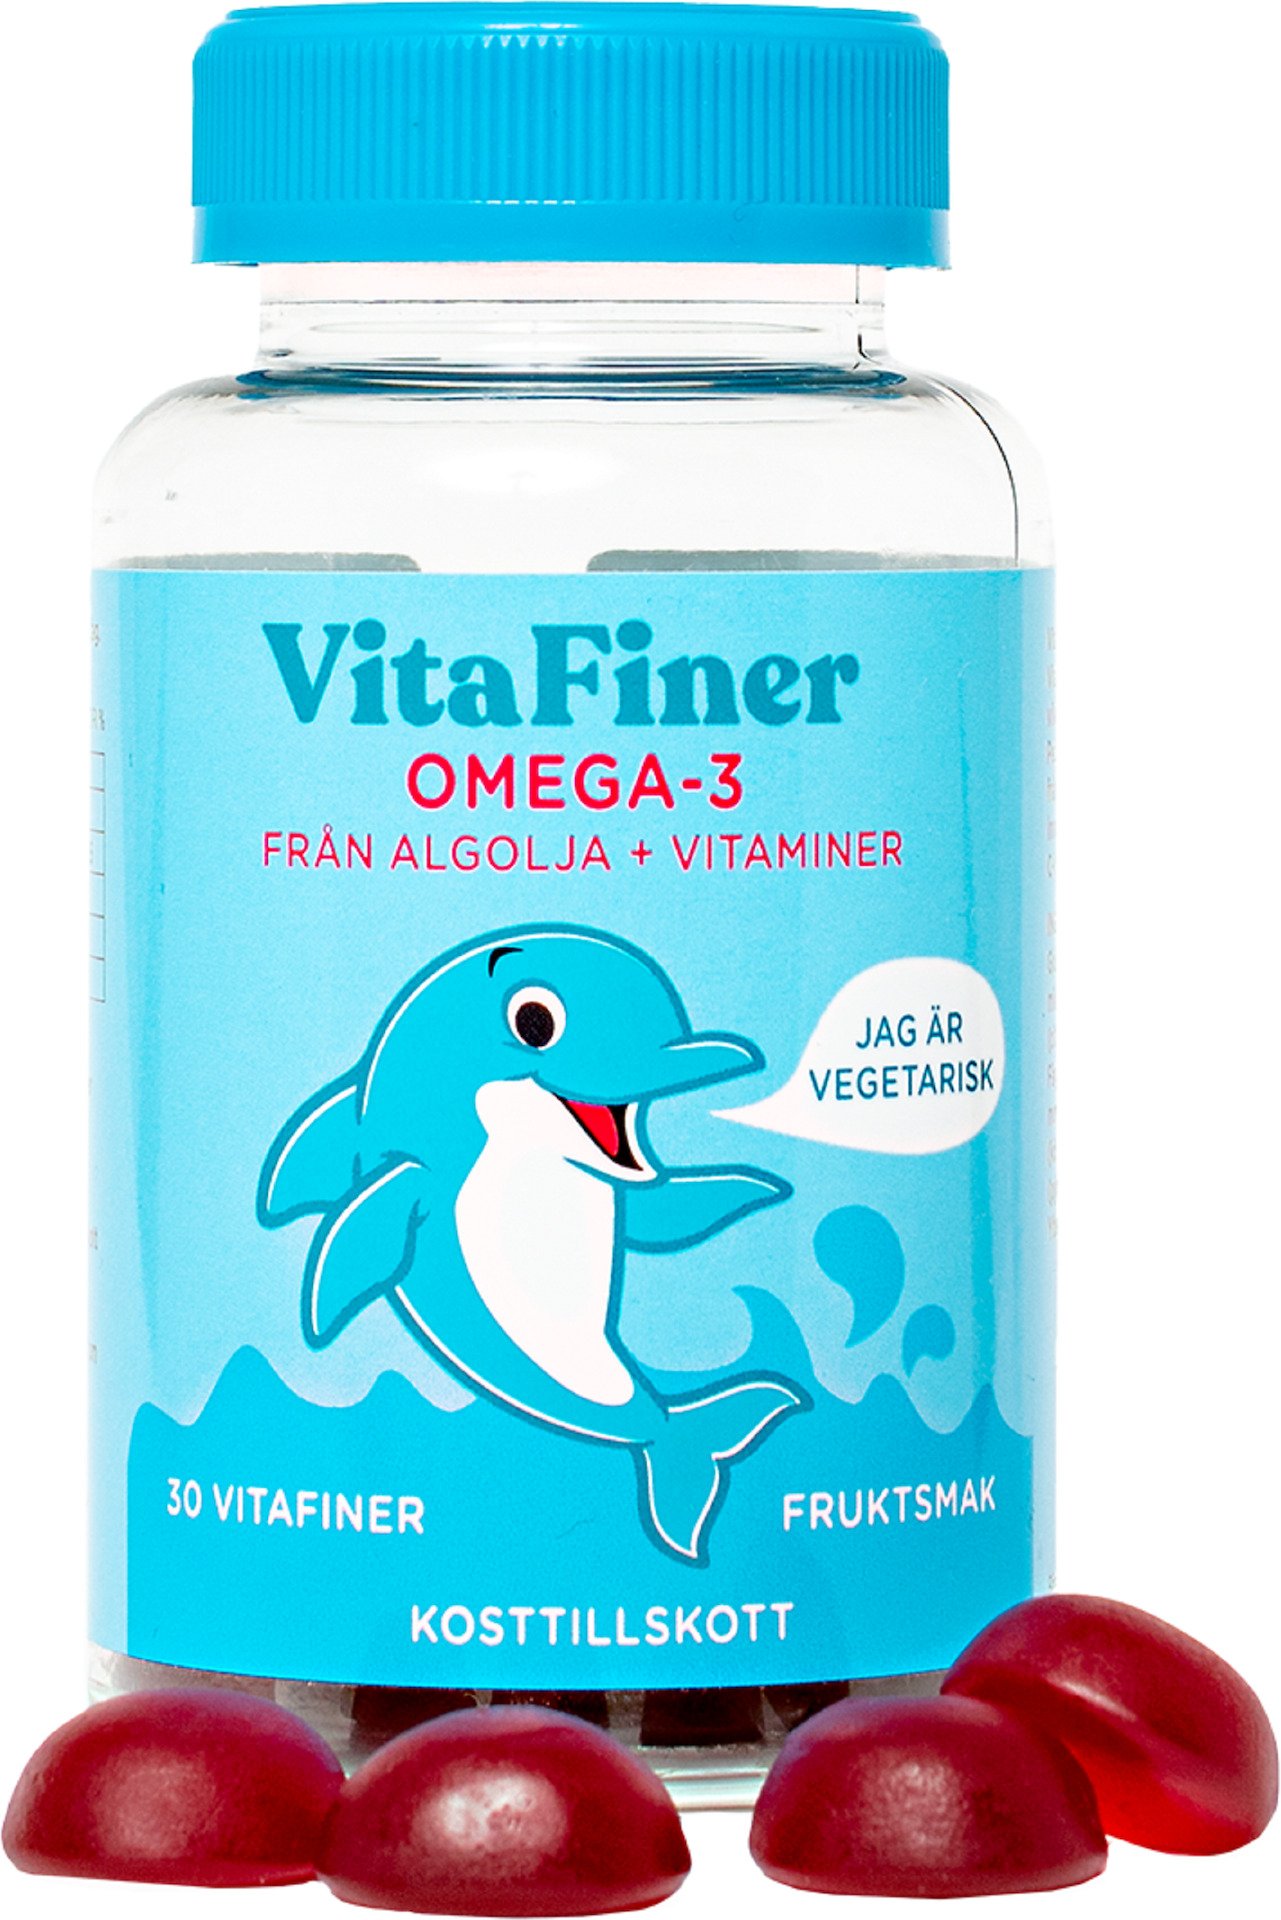 VitaFiner Omega-3 30 tuggtabletter